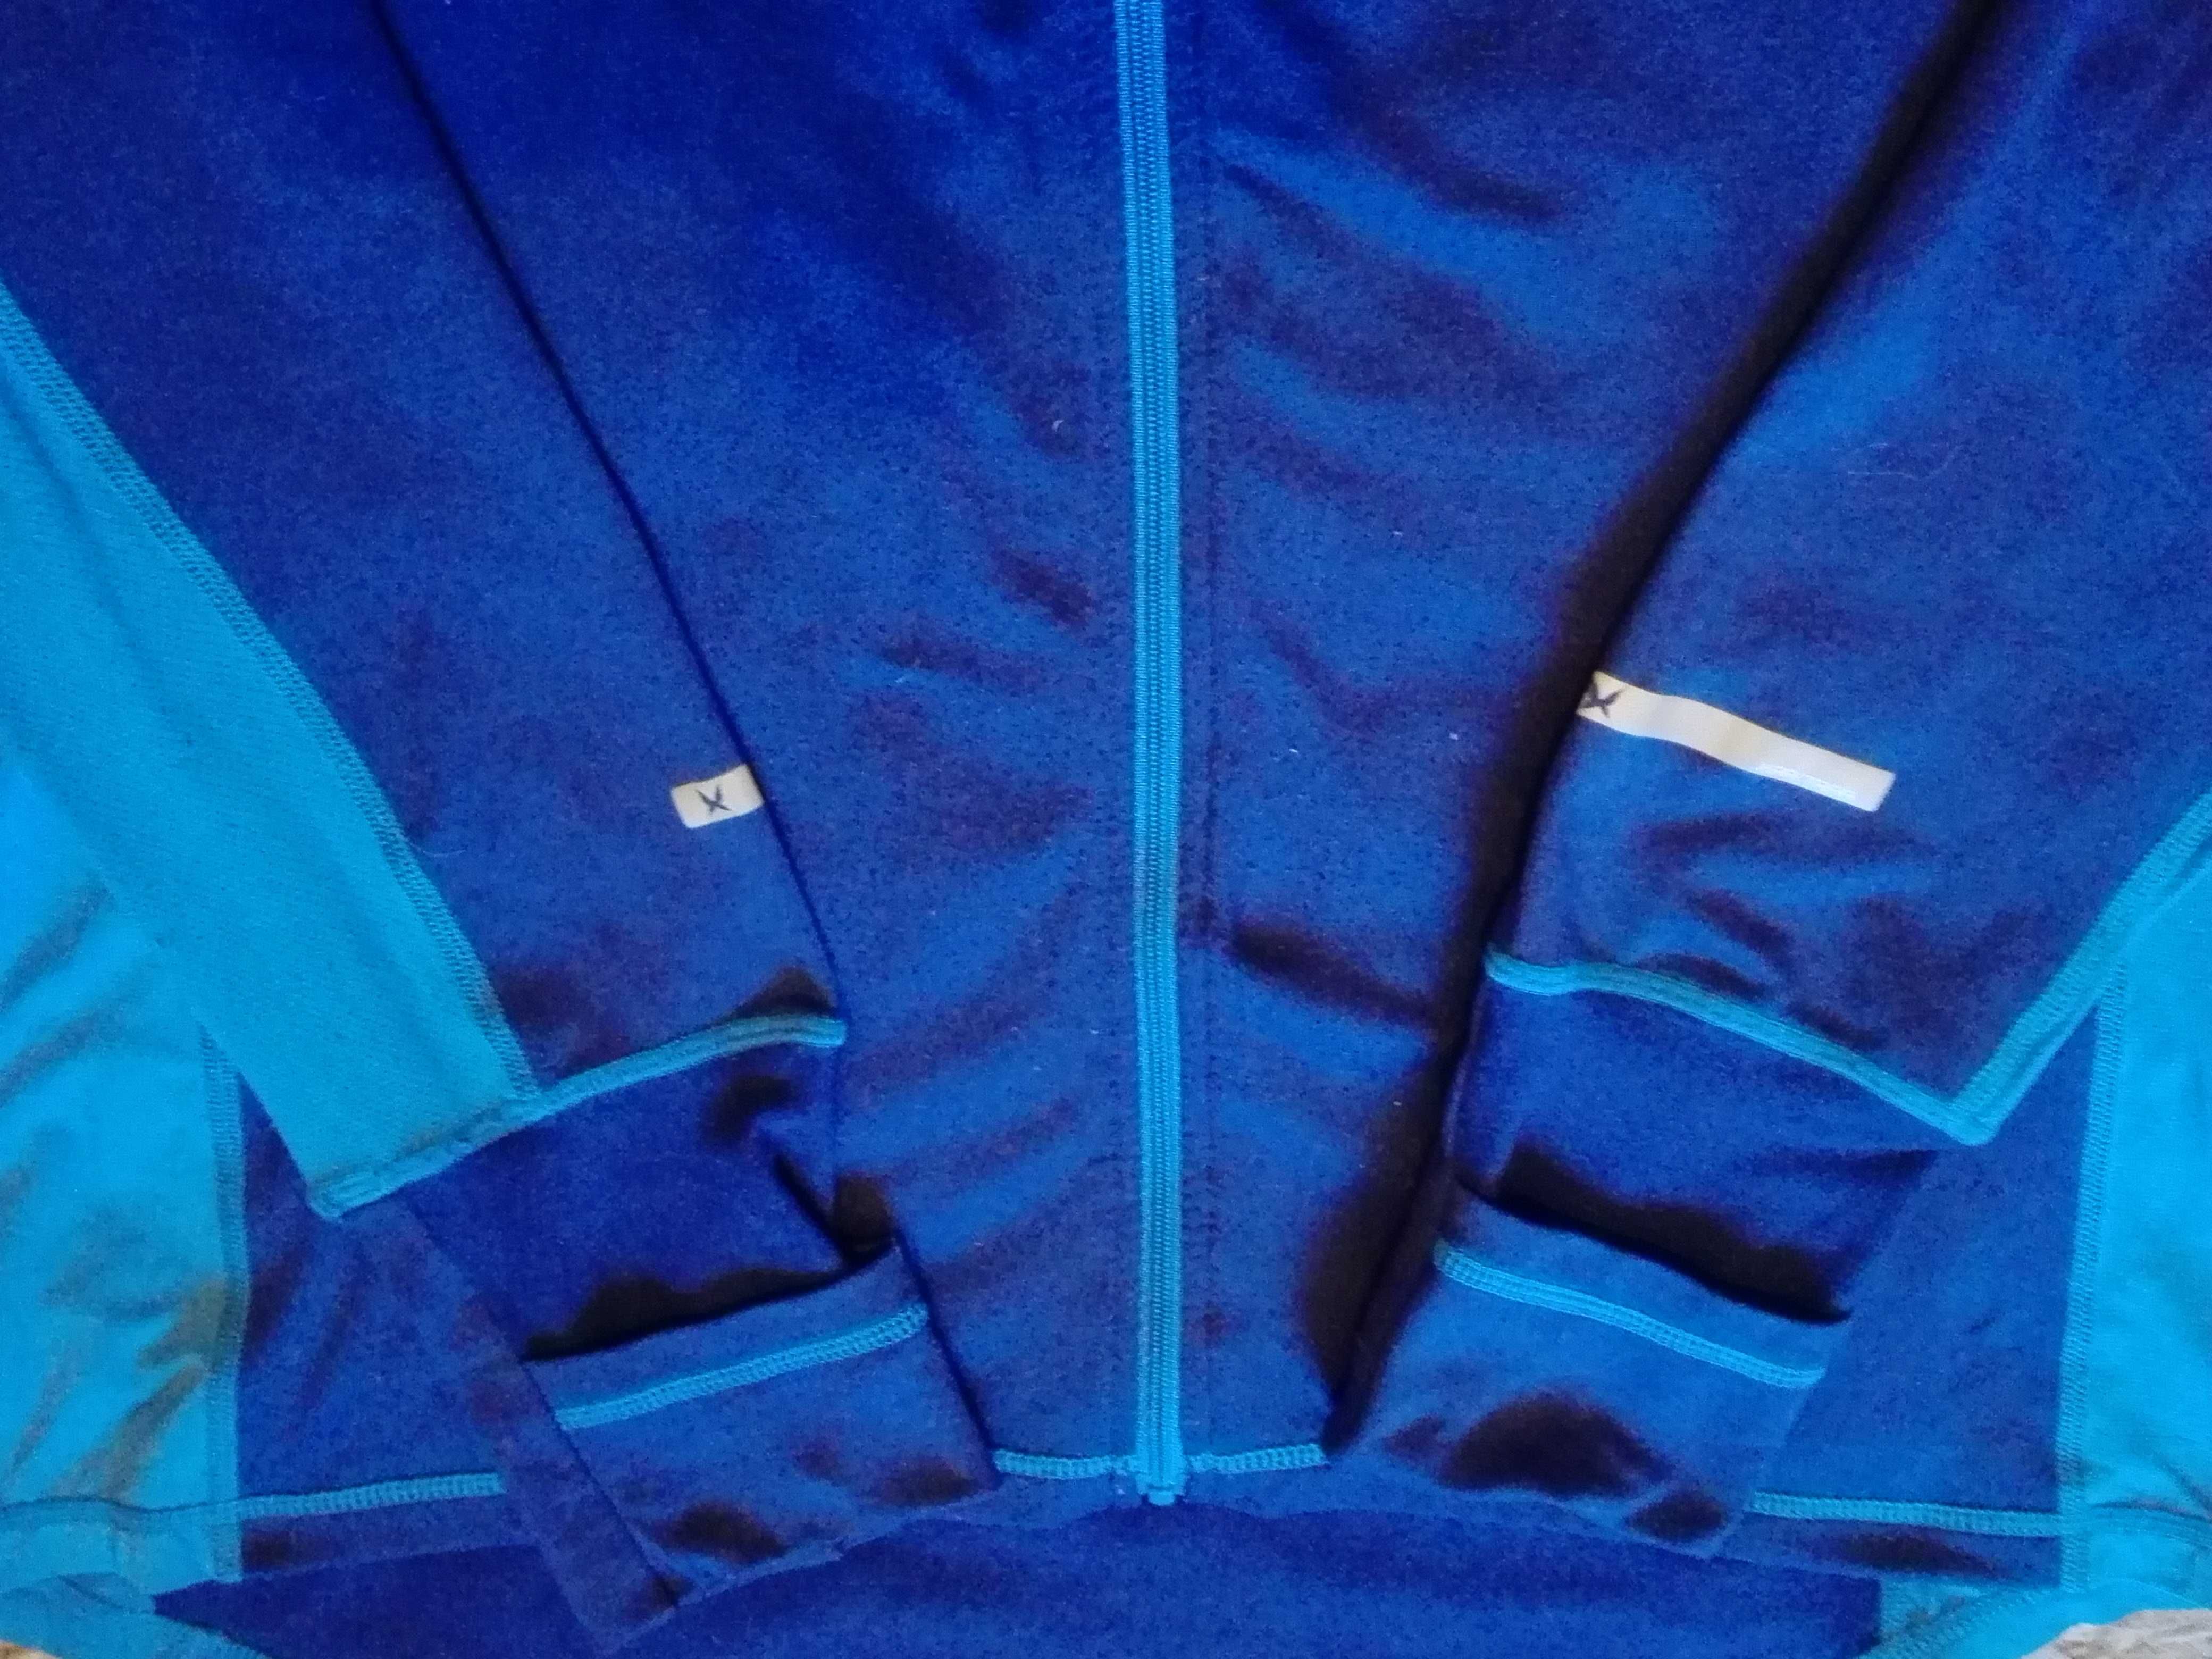 Bluza termiczna Kari traa - L